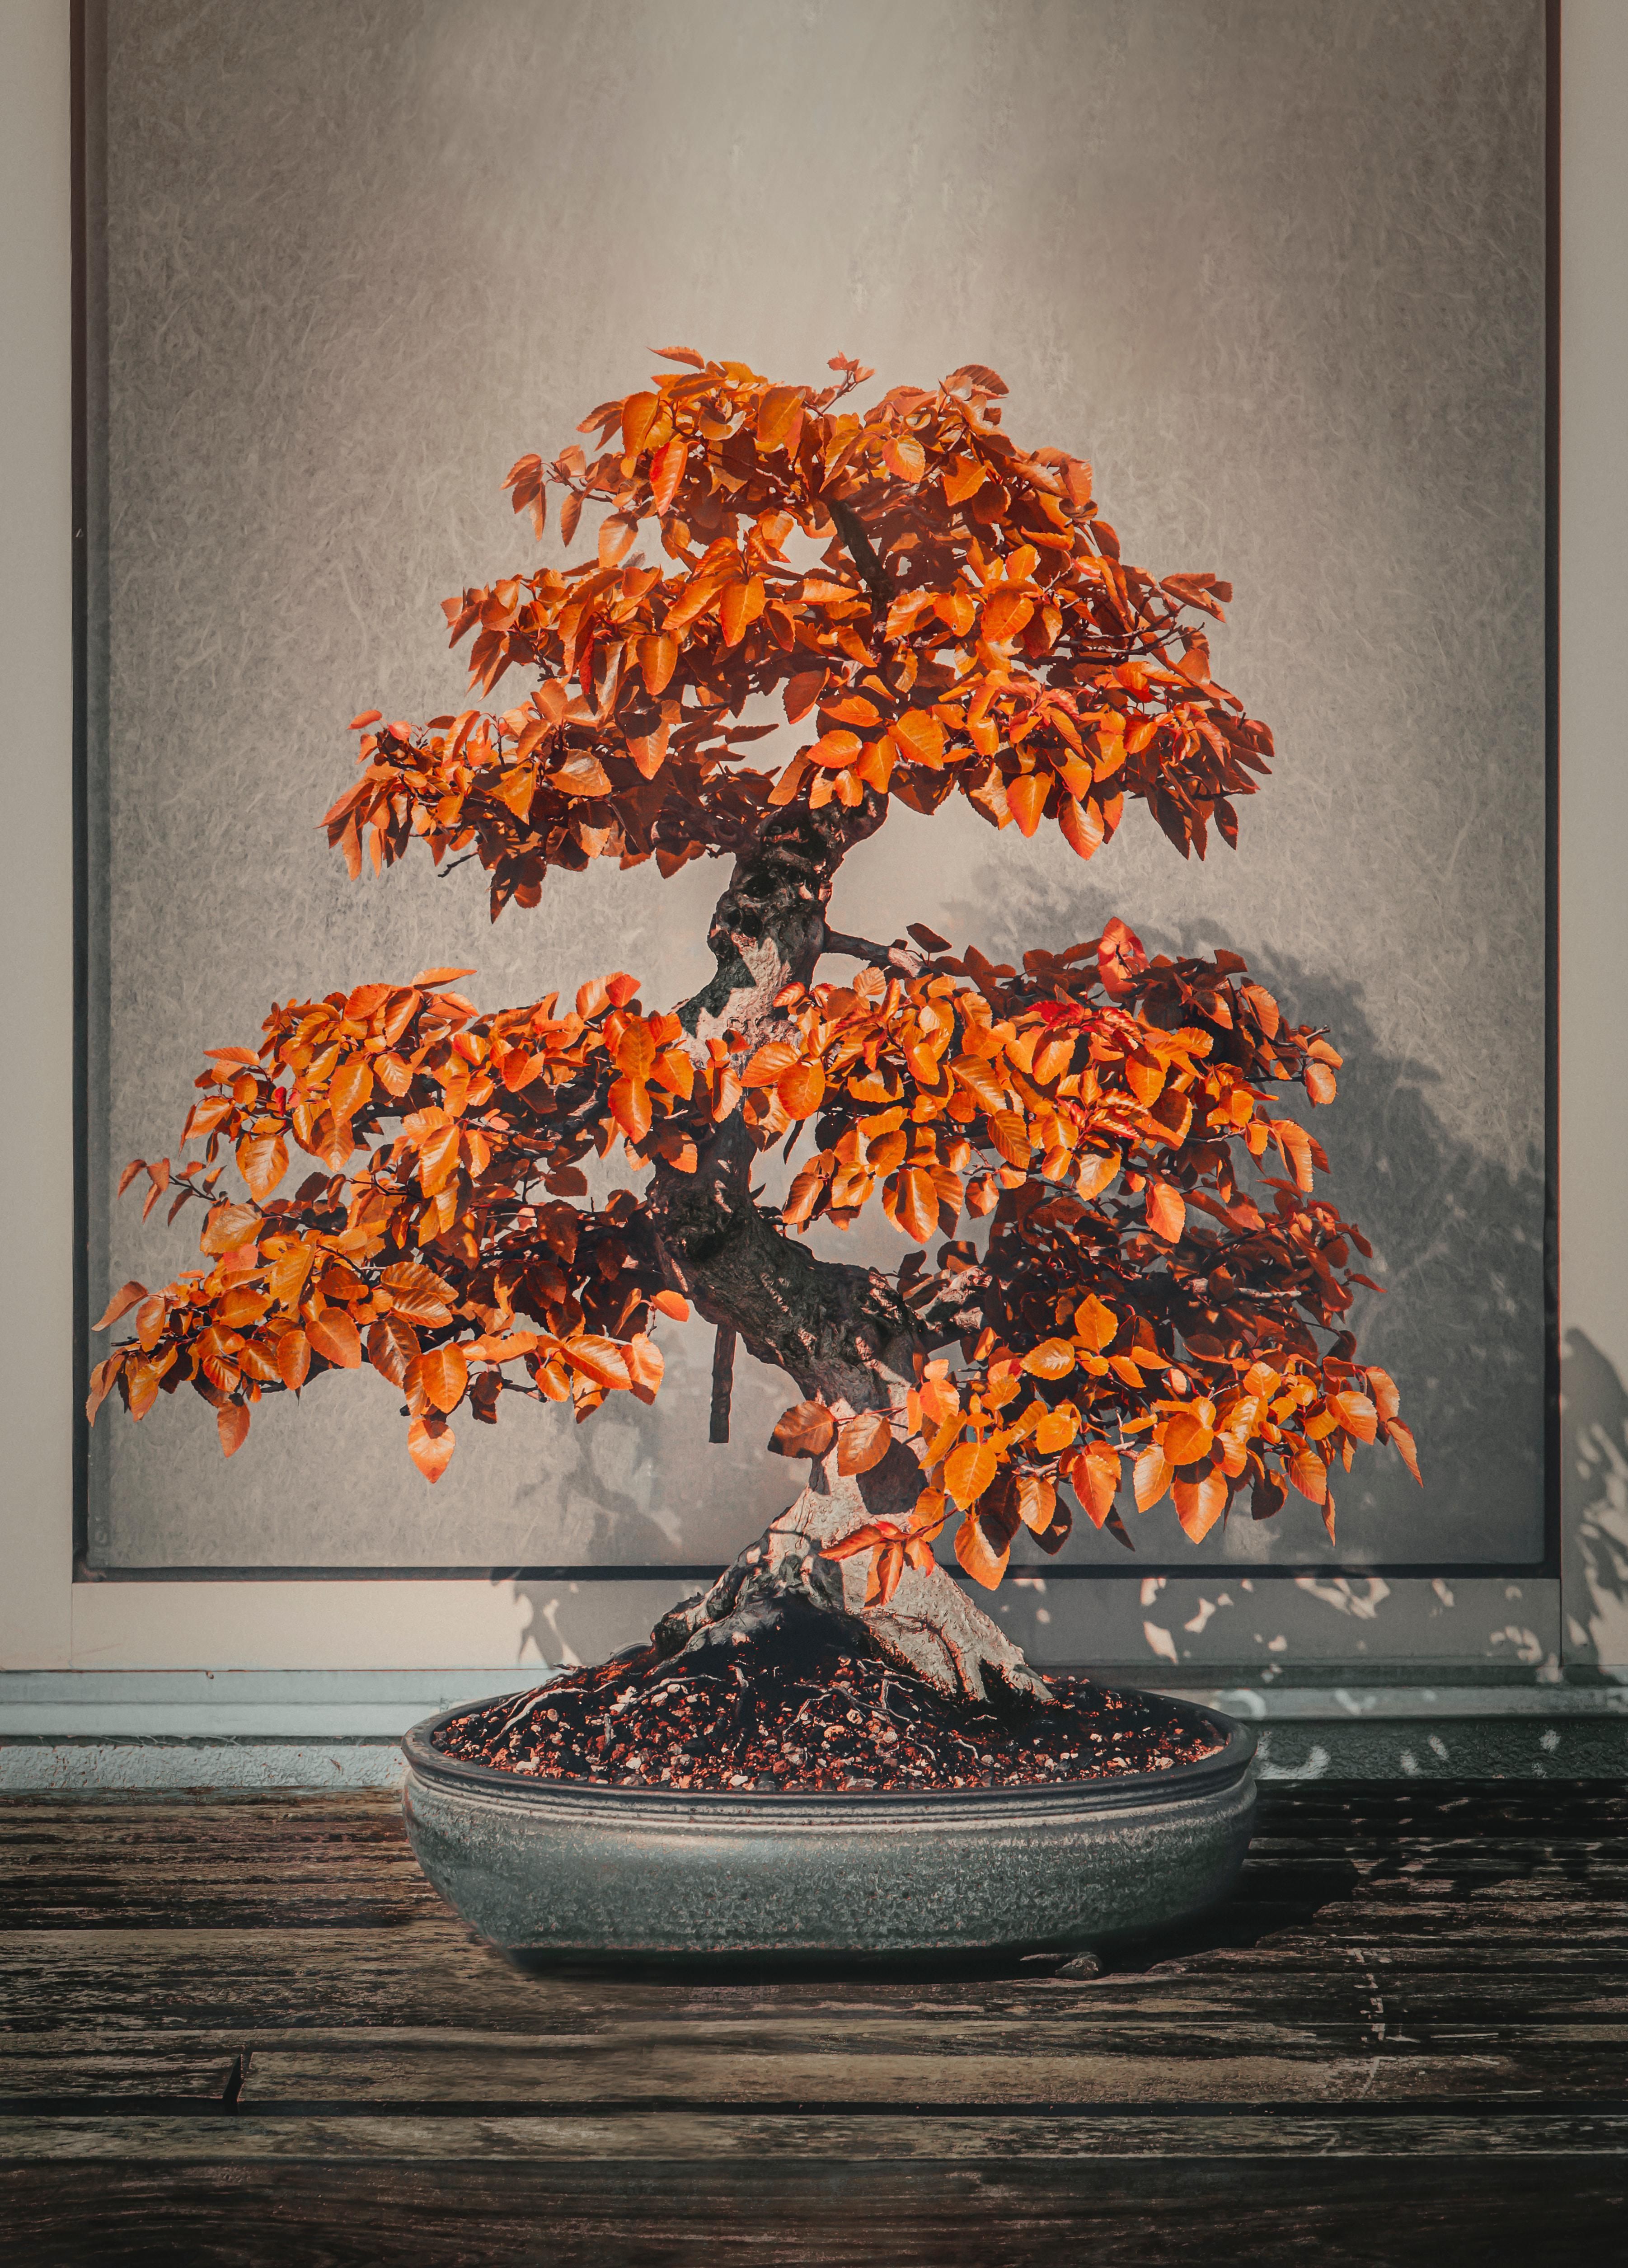 A legdrágább bonsai fák több százmillió forintot is megérnek